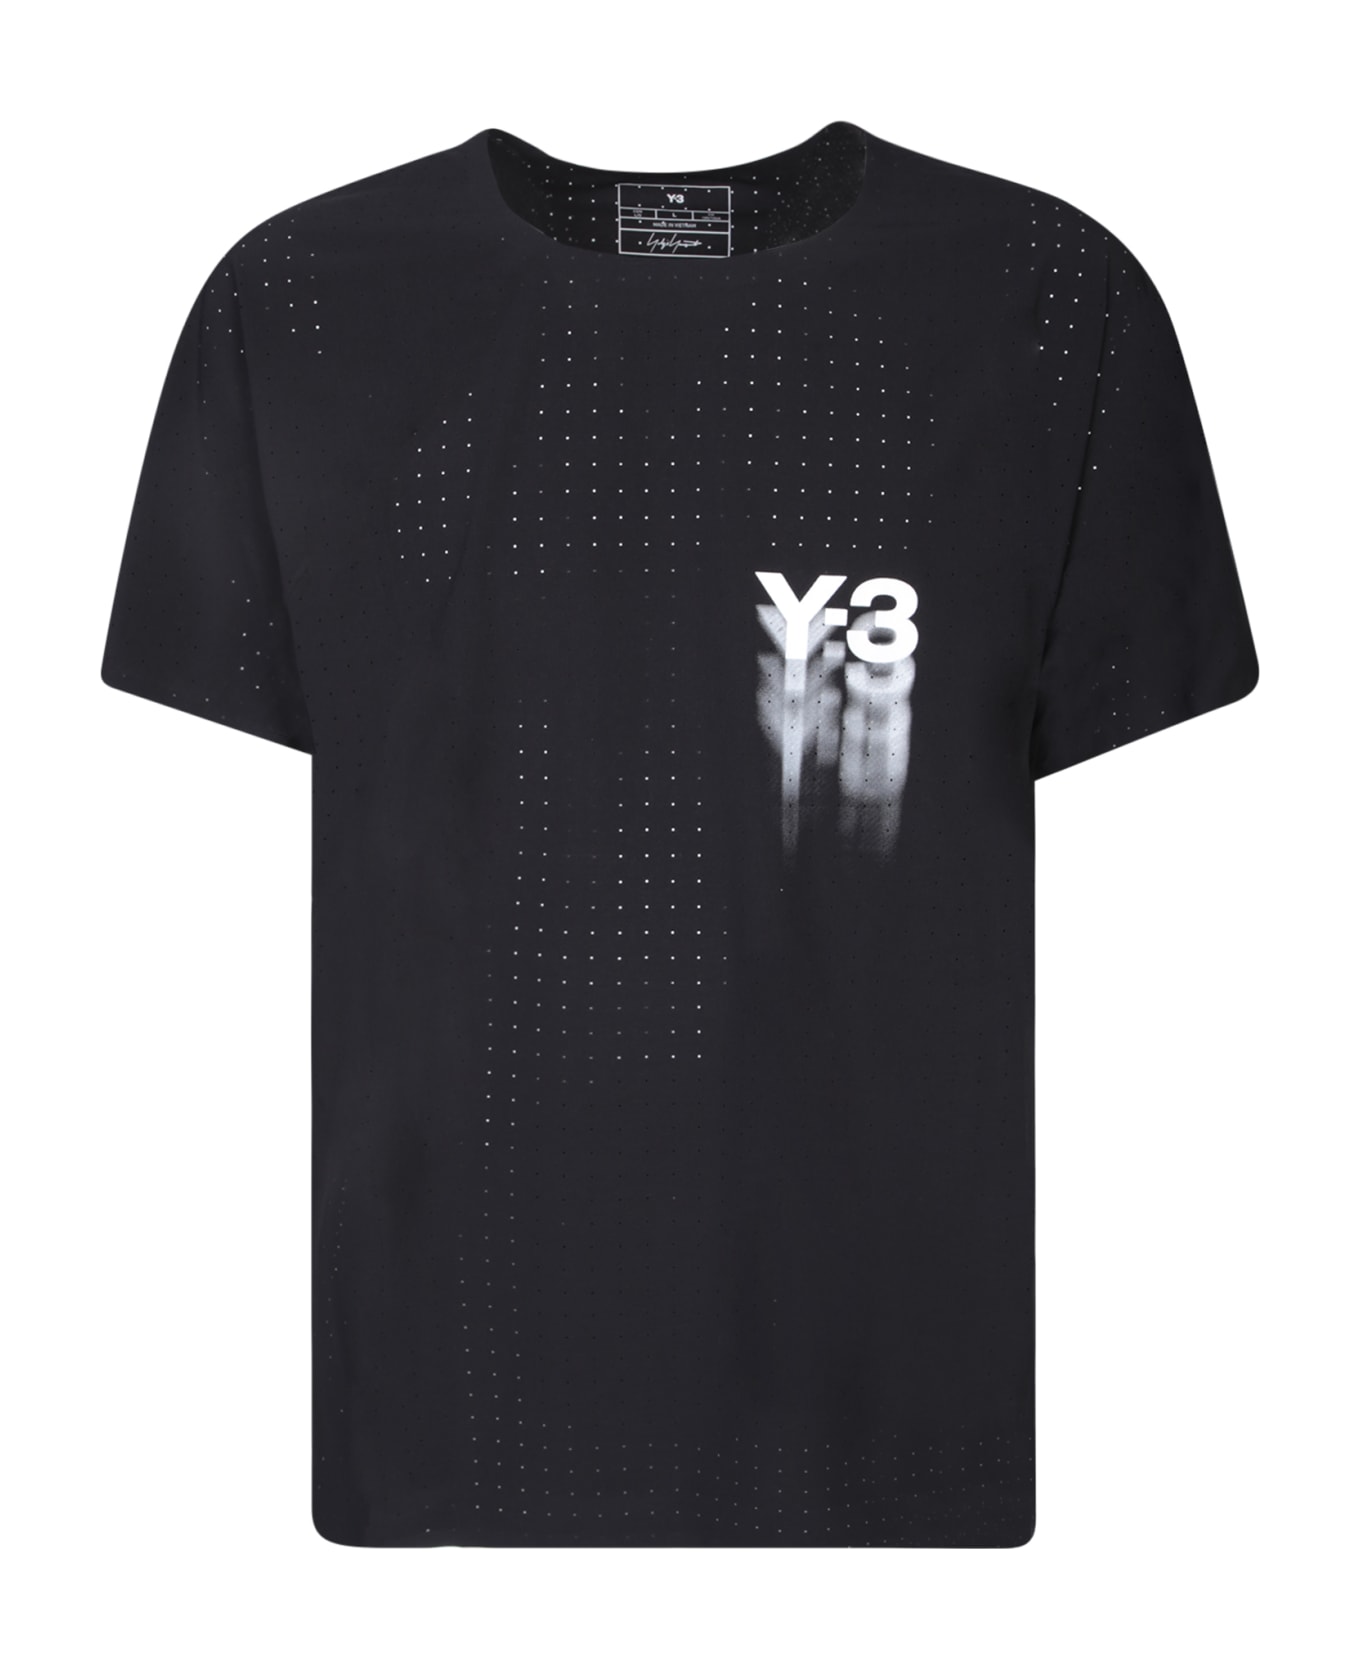 Y-3 Adidas Y-3 Black Run T-shirt - Black シャツ